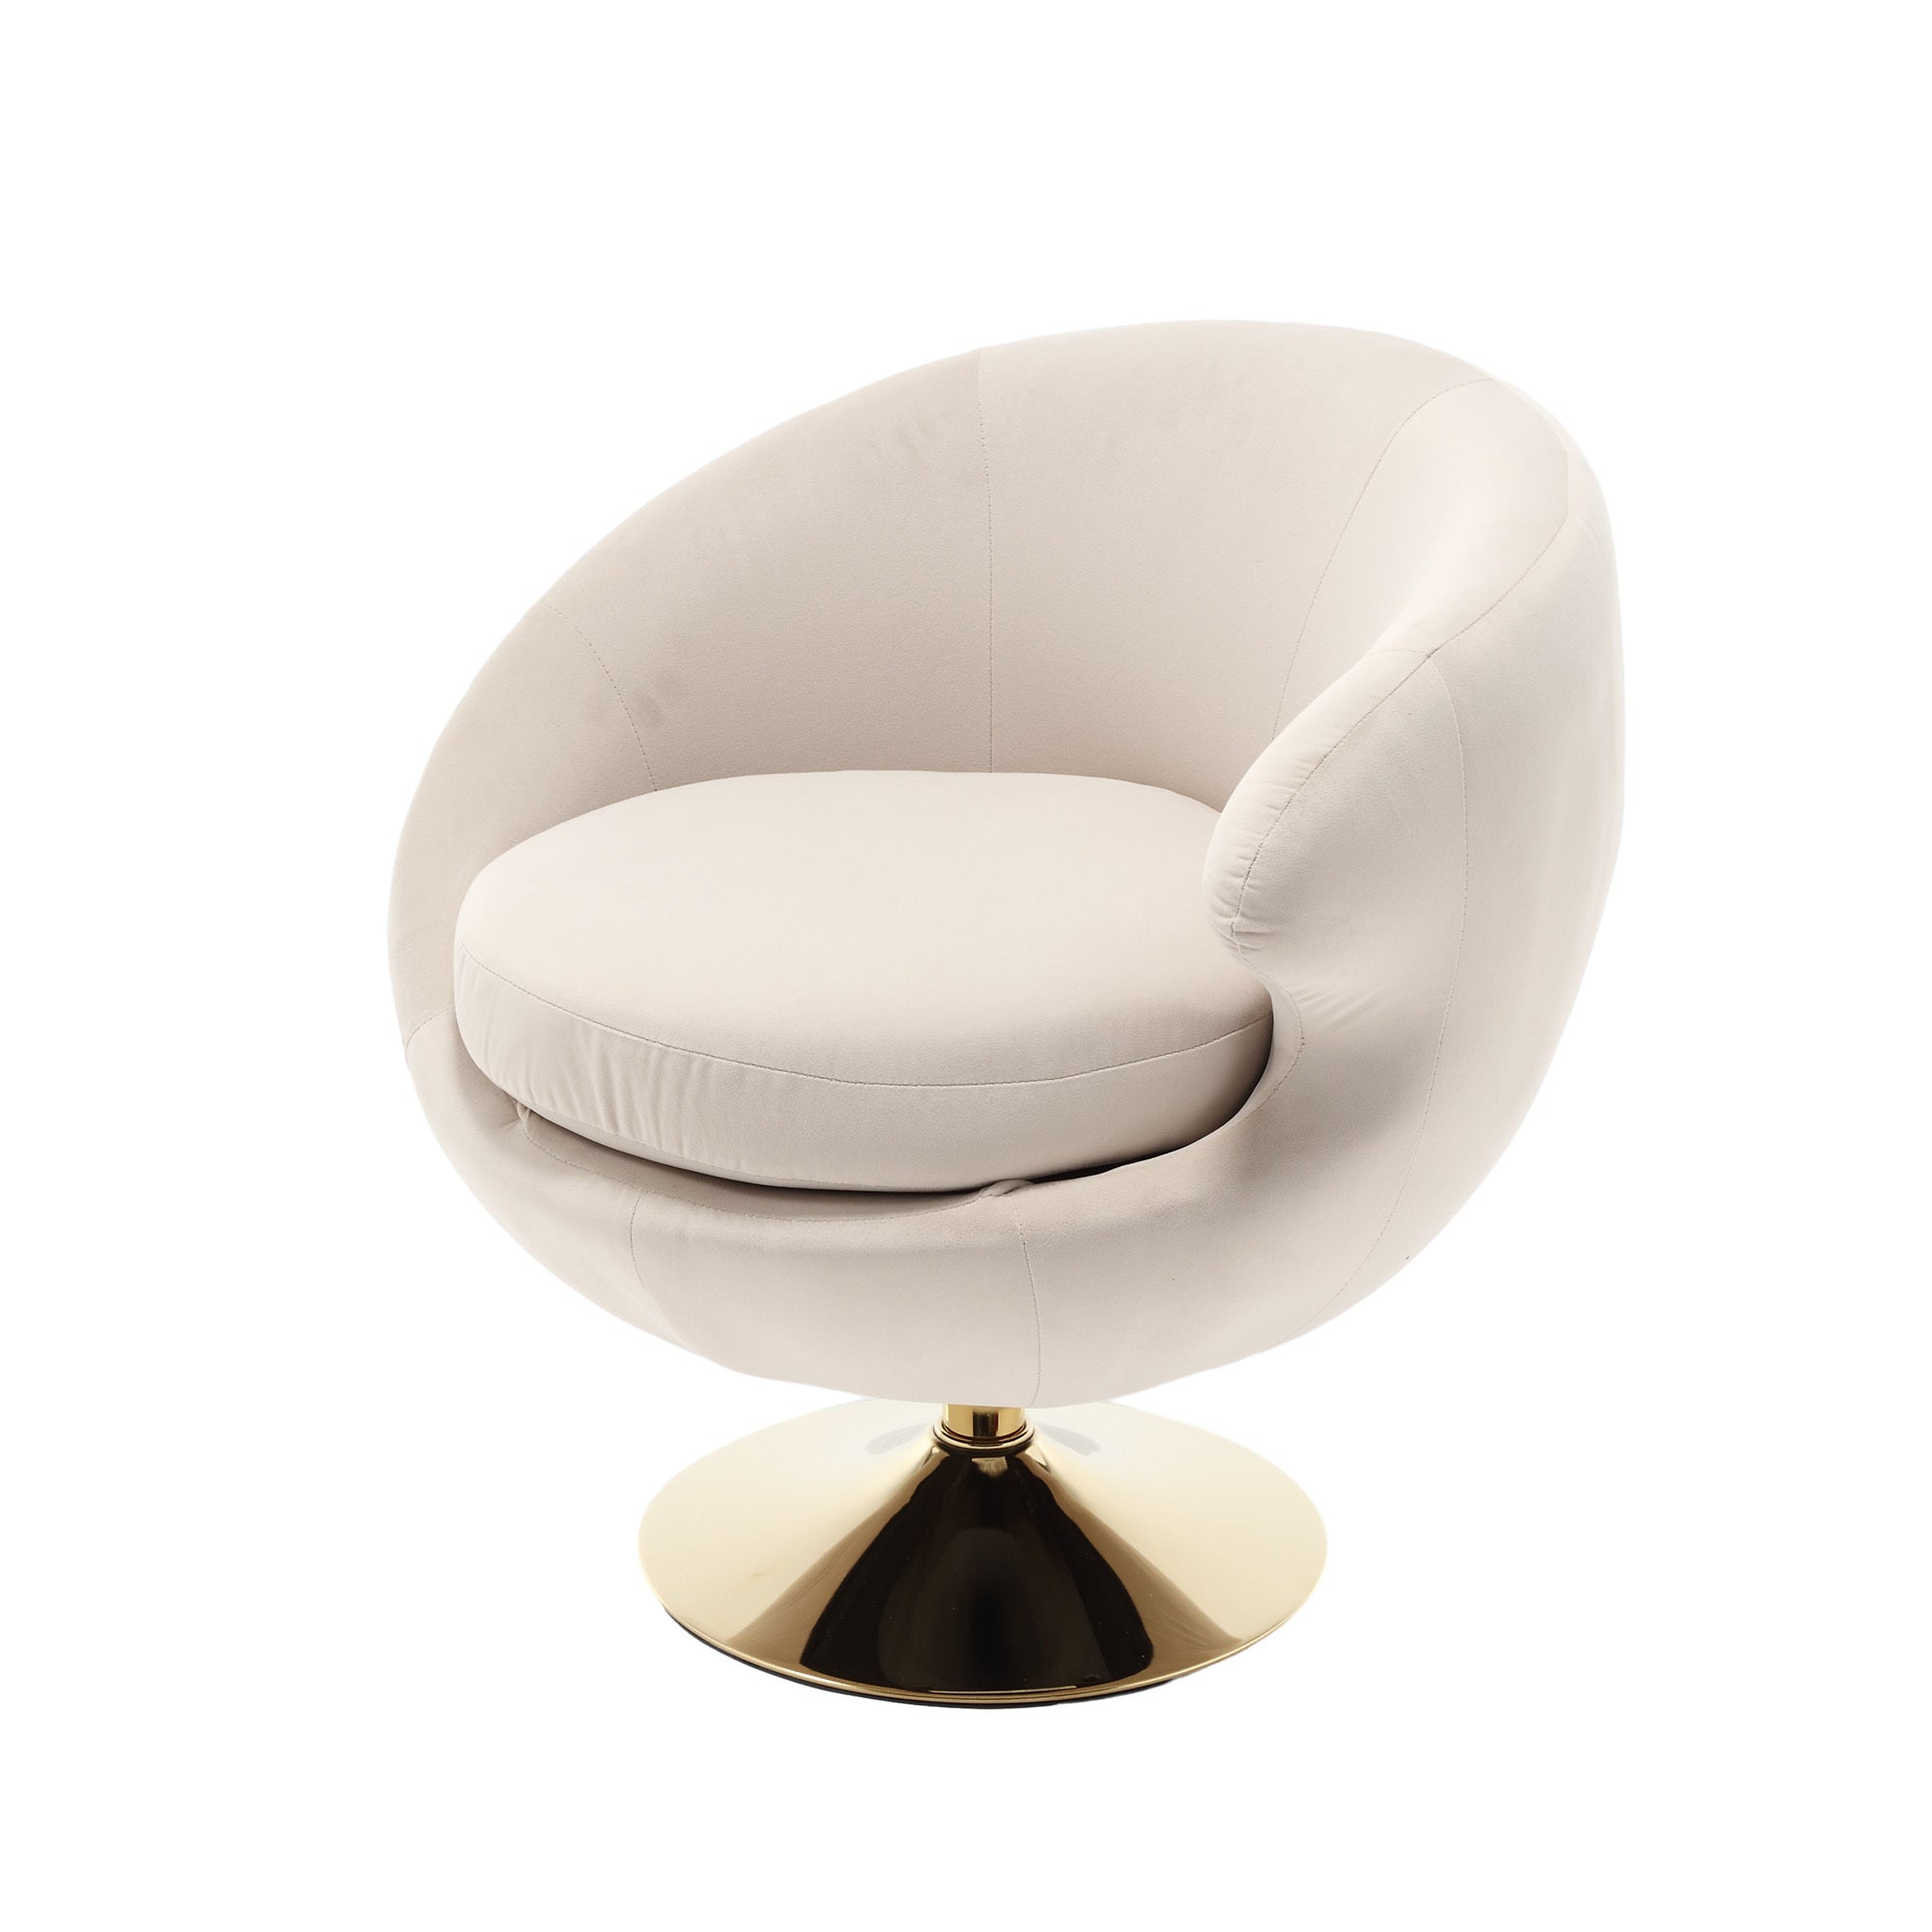 360 Degree Swivel Cuddle Barrel Accent Chairs, Round beige-velvet